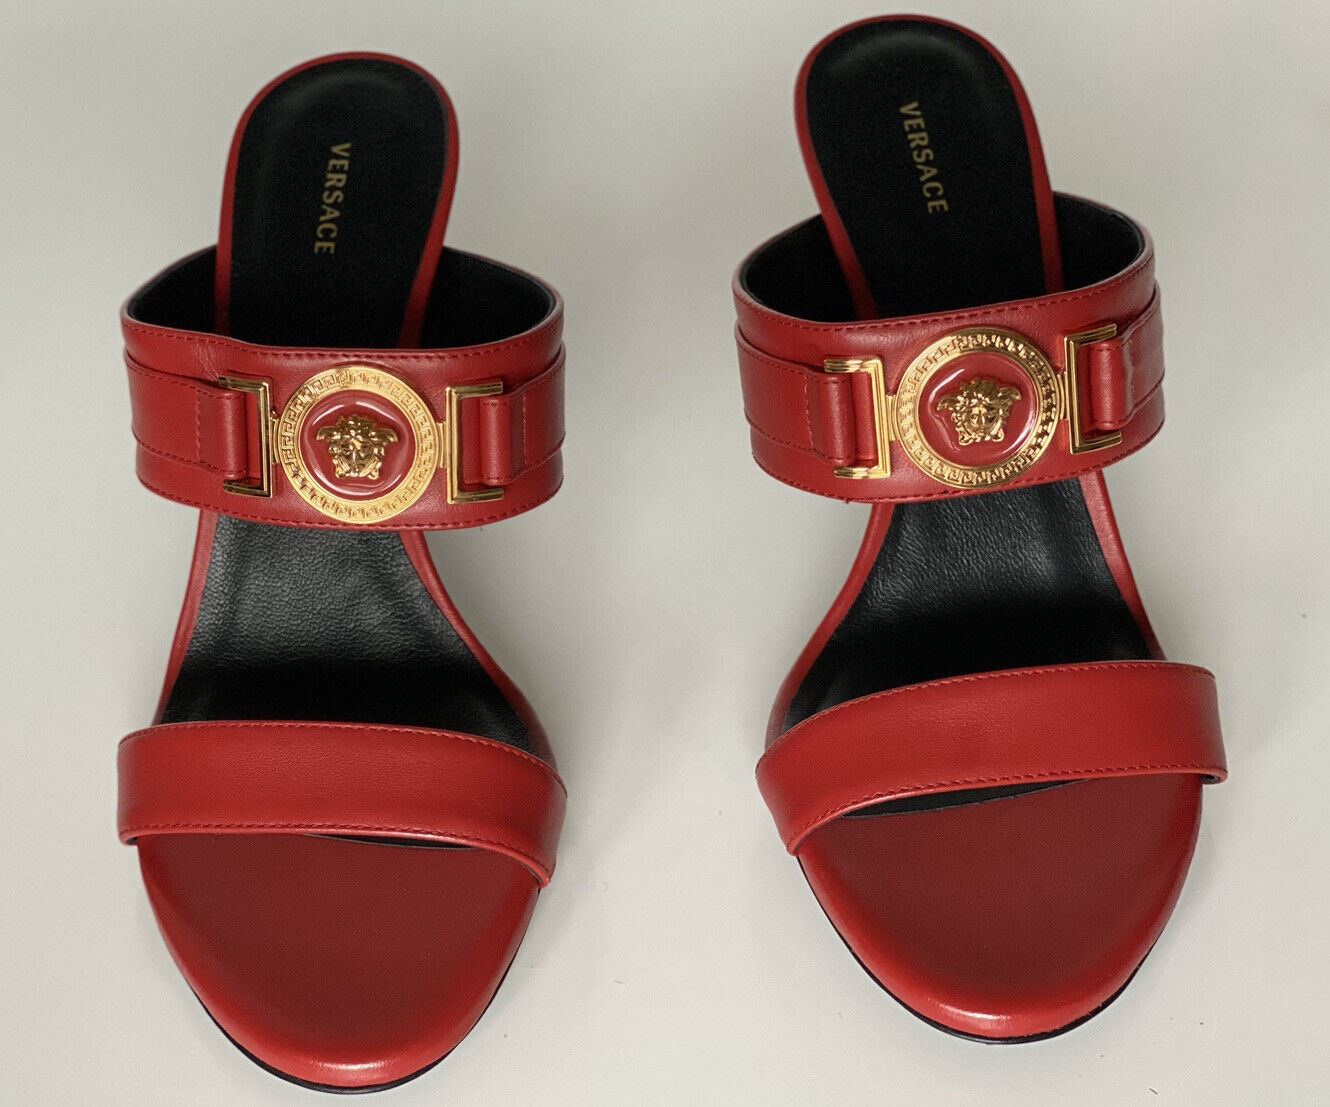 NIB VERSACE Женские красные туфли-лодочки Medusa 9,5 США (39,5 евро) Италия D1NPS 